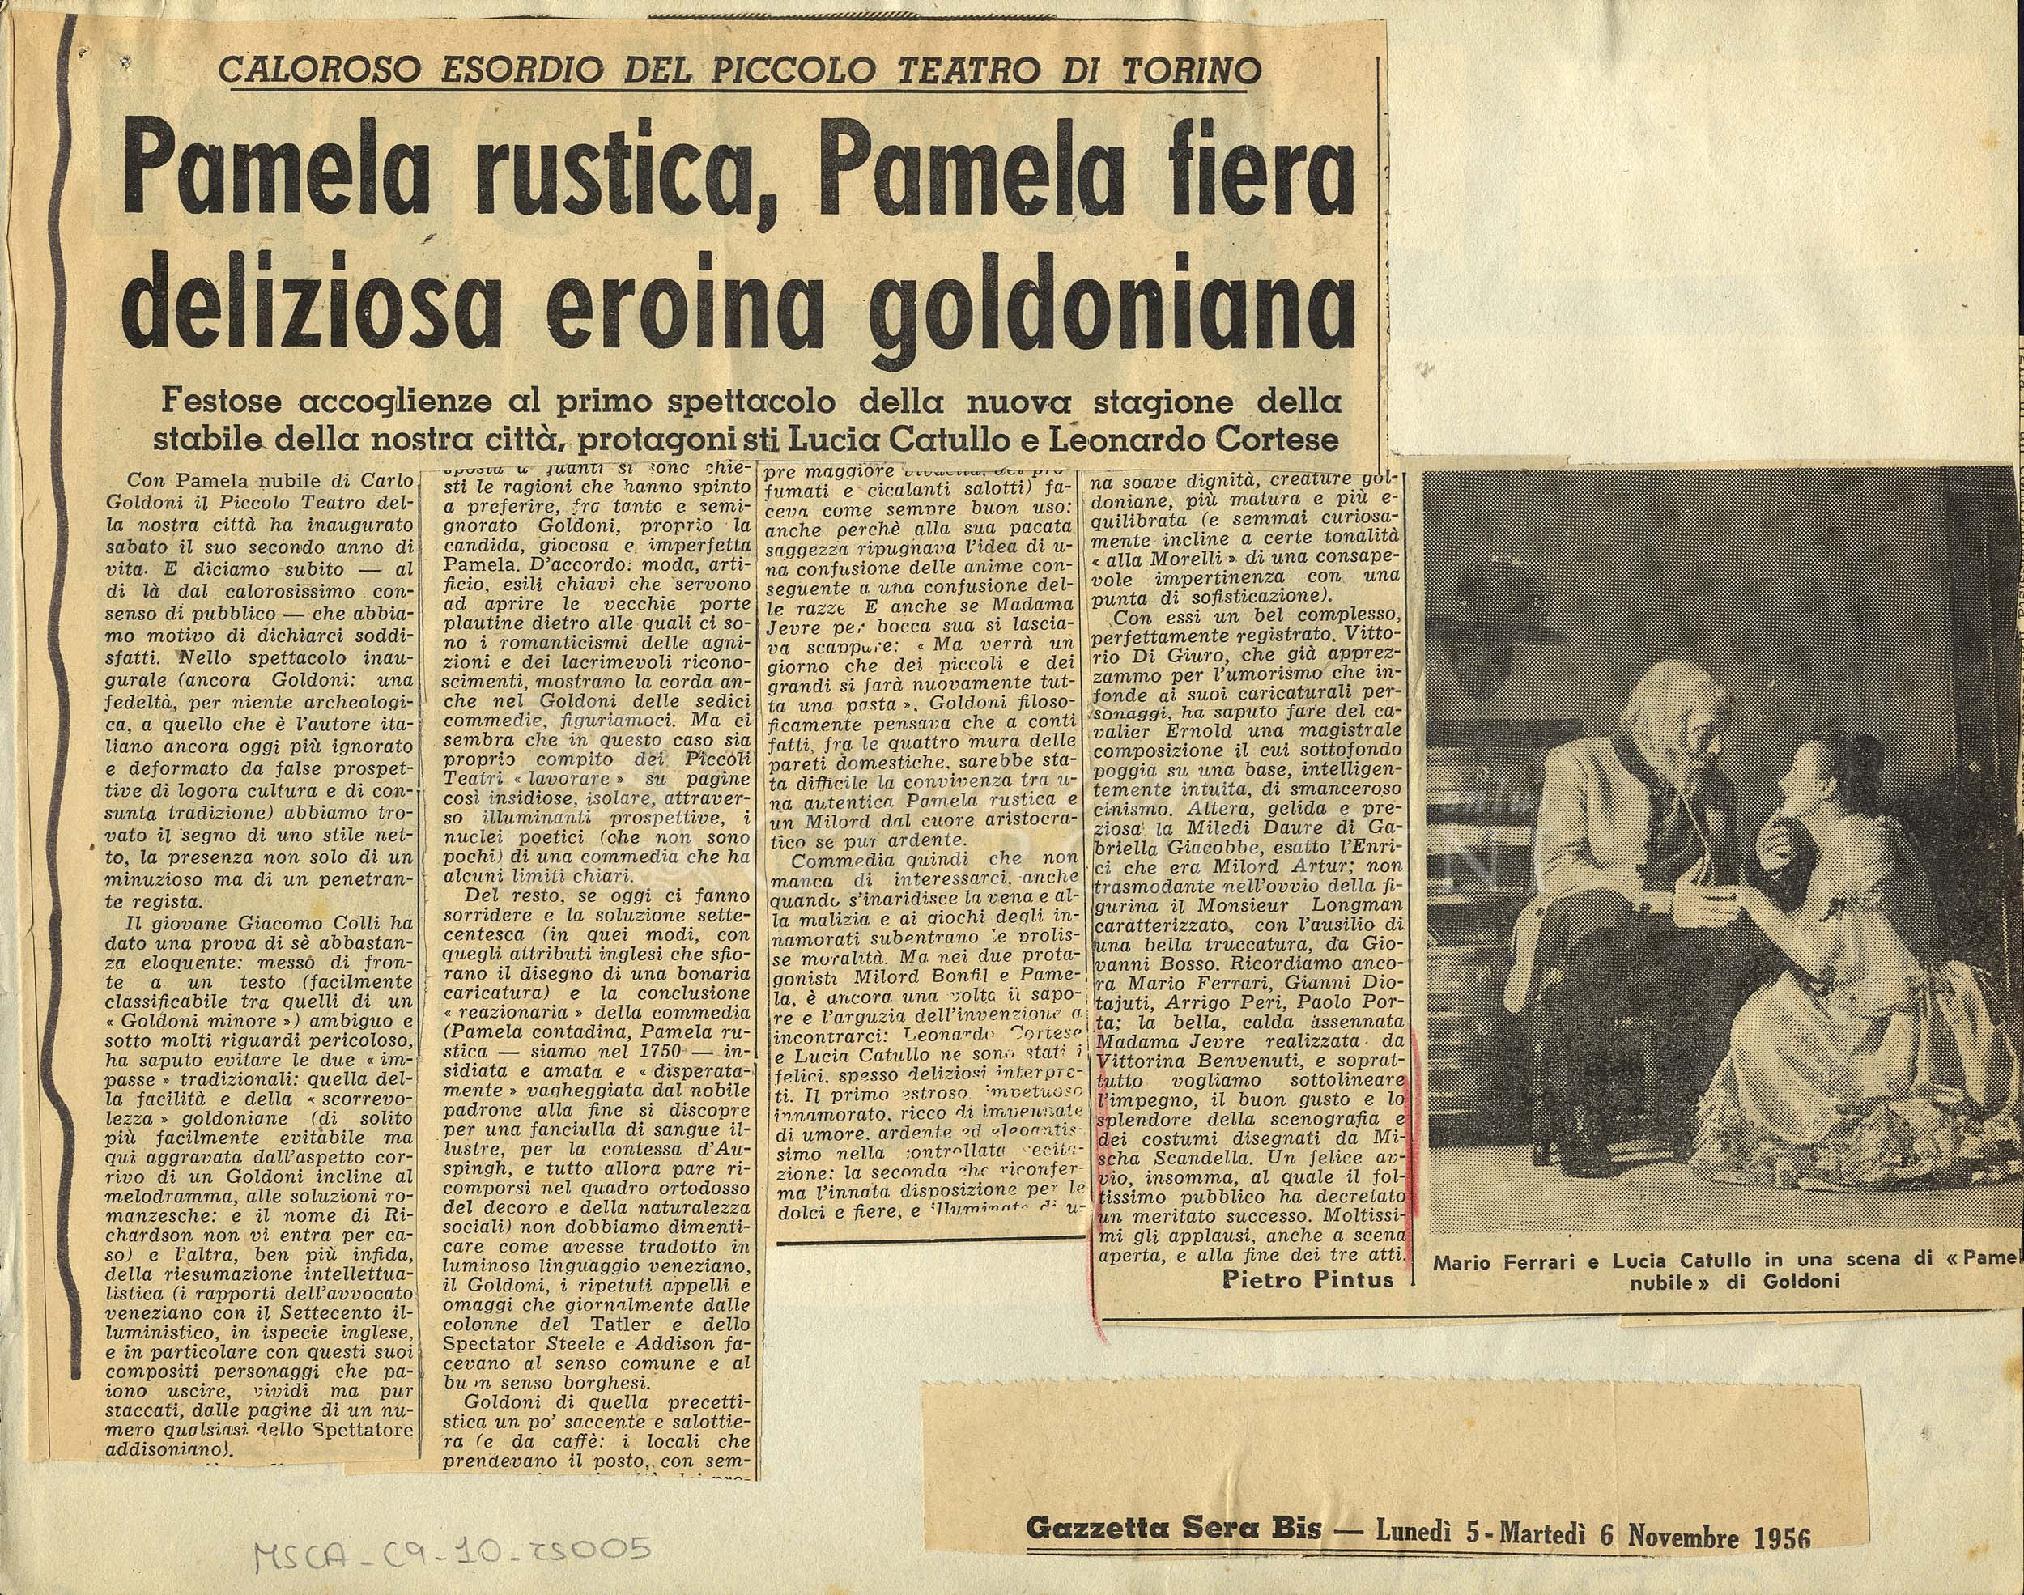 Pamela rustica, Pamela fiera deliziosa eroina goldoniana
				 : Caloroso esordio del Piccolo Teatro di Torino 05 novembre 1956 - 06 novembre 1956